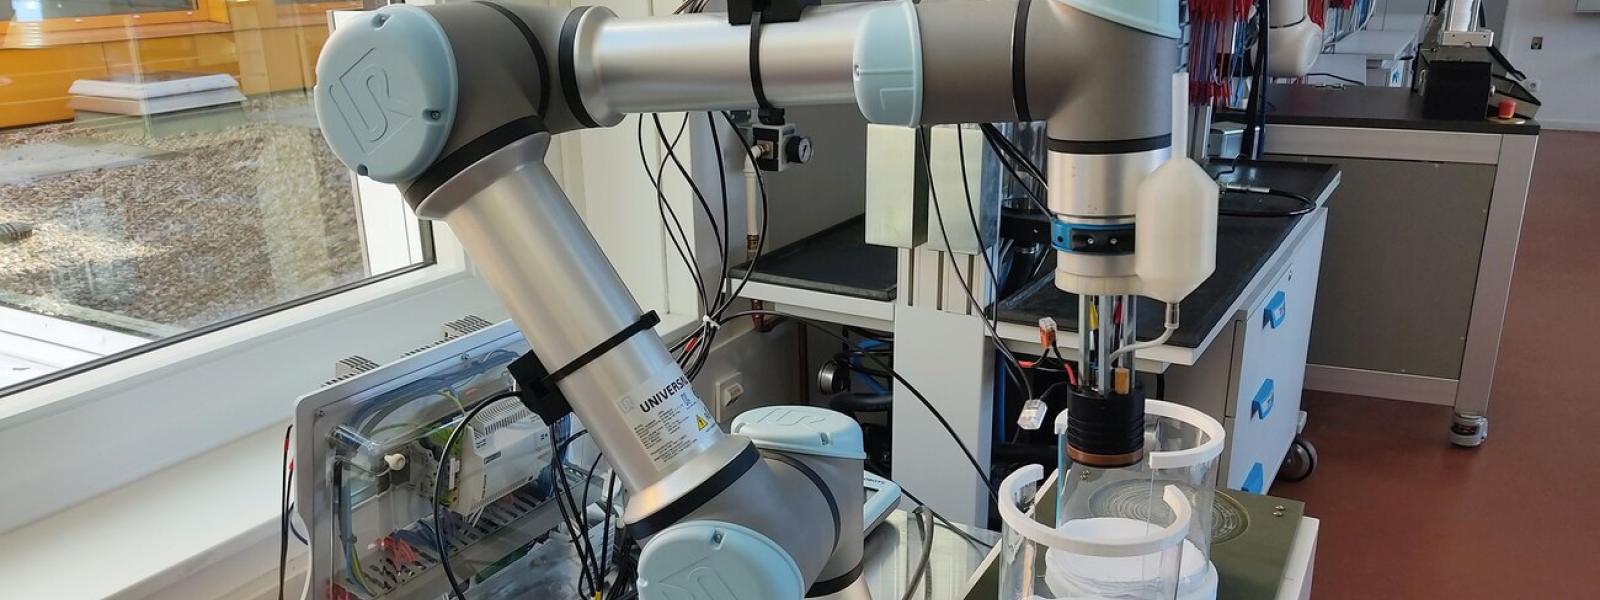 Ein Roboter UR in einer Laborumgebung